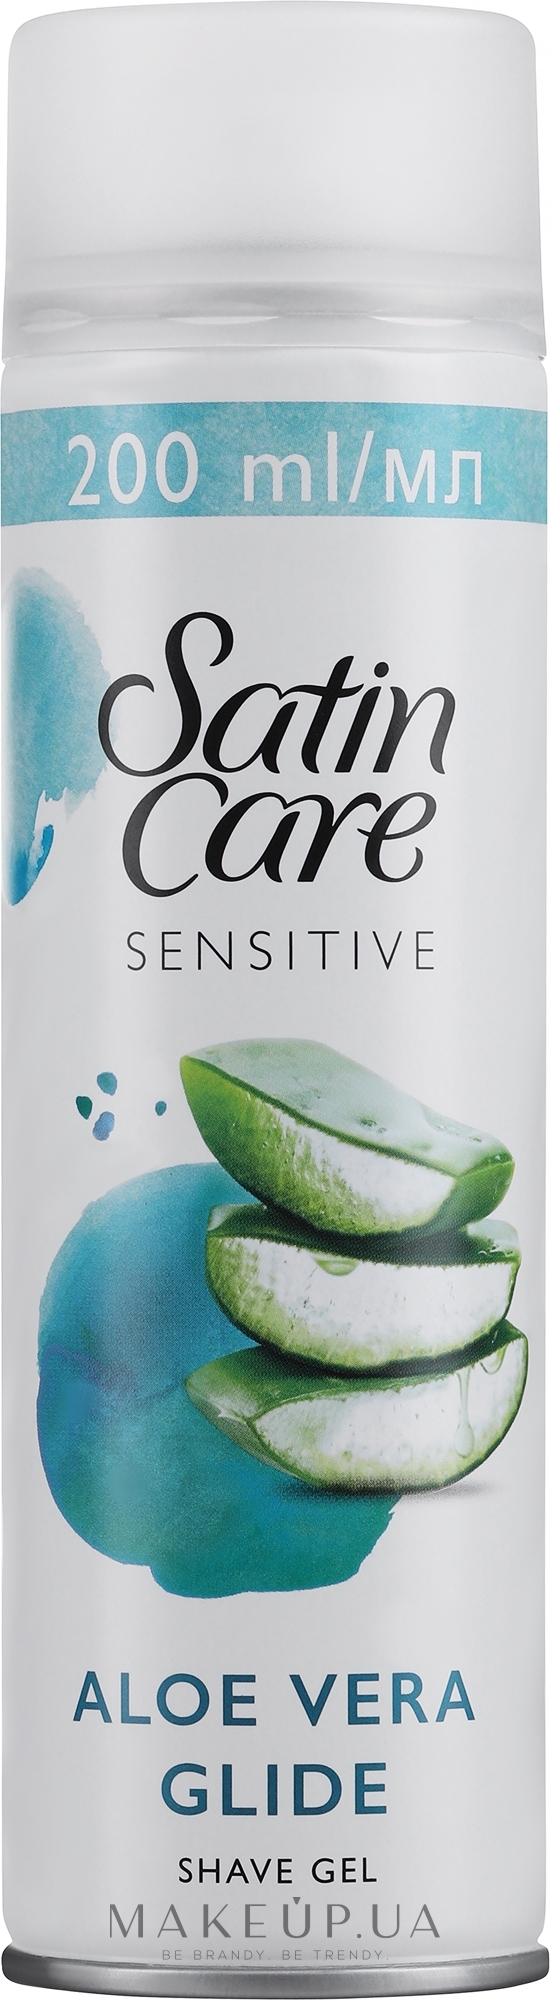 Гель для бритья для чувствительной кожи - Gillette Satin Care Sensitive Skin Shave Gel for Woman — фото 200ml